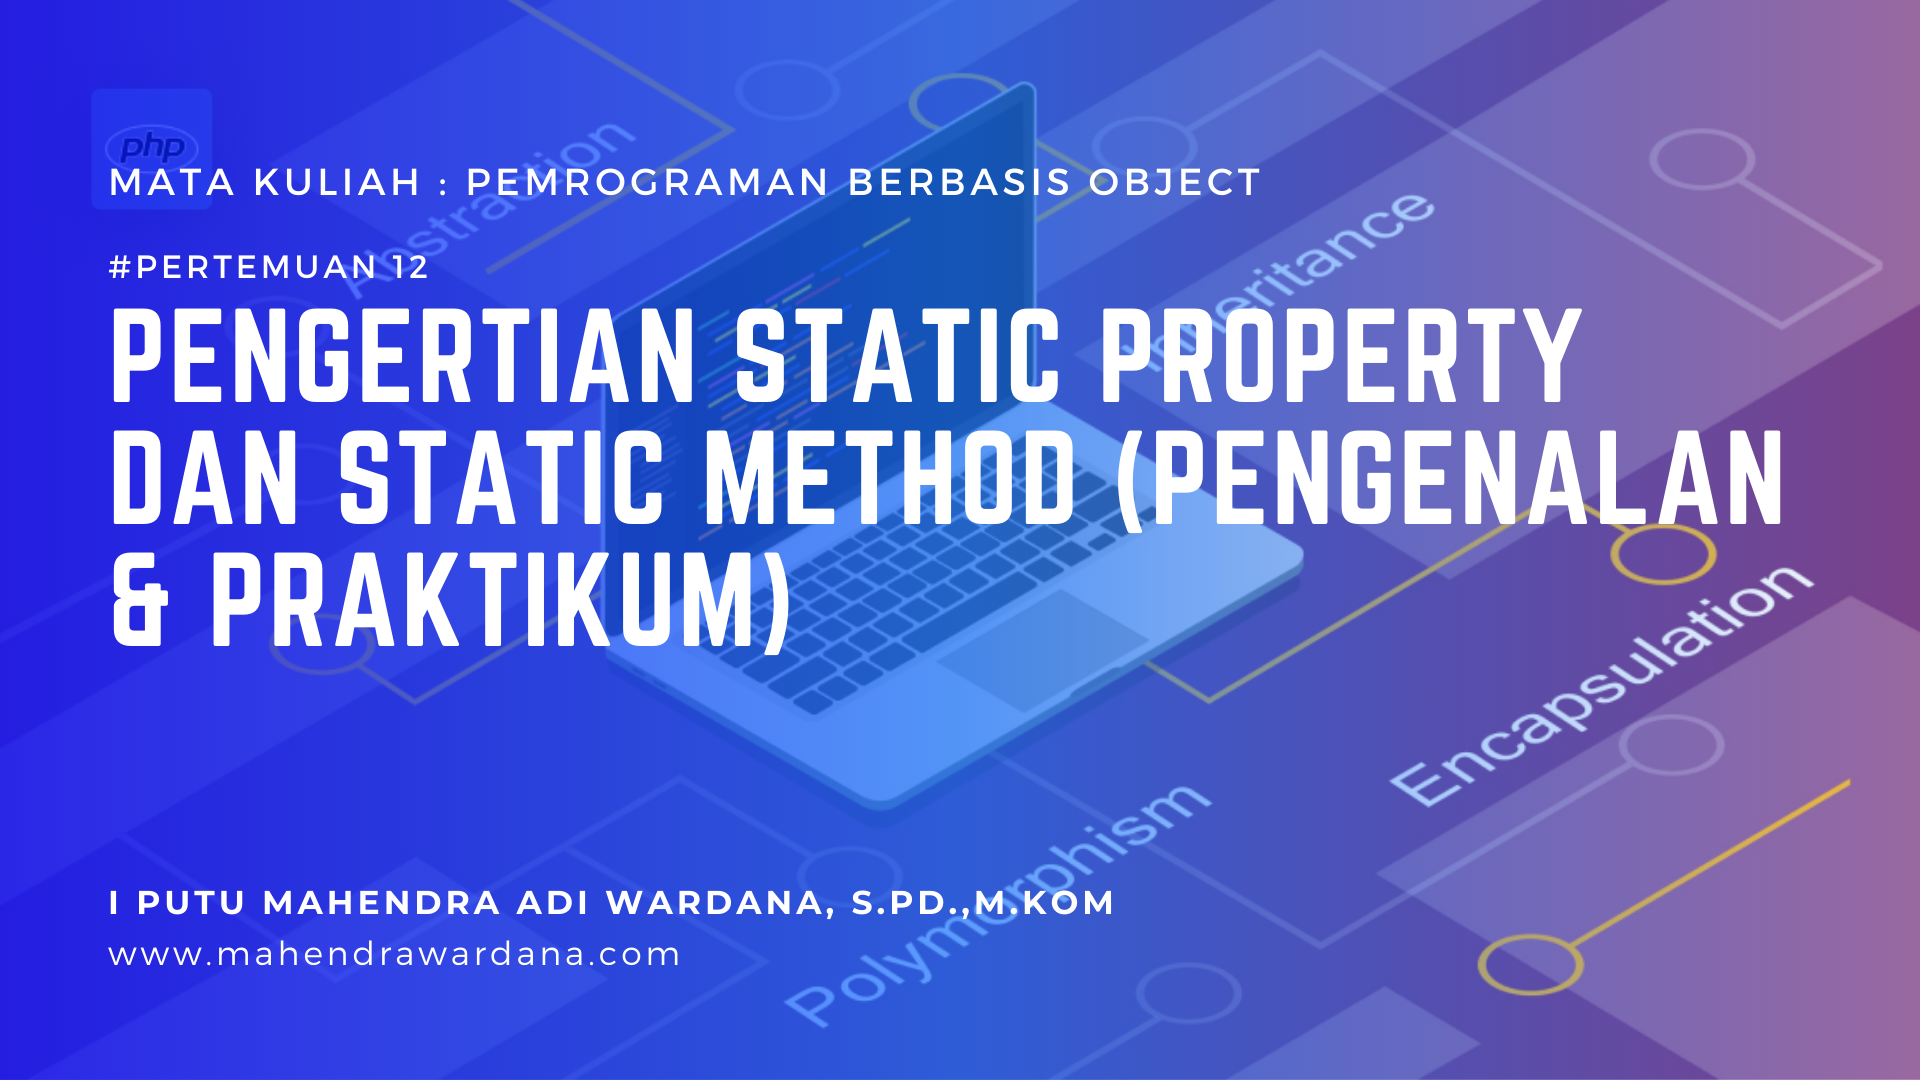 Pertemuan 12 - Pengertian Static Property dan Static Method (Pengenalan & Praktikum)